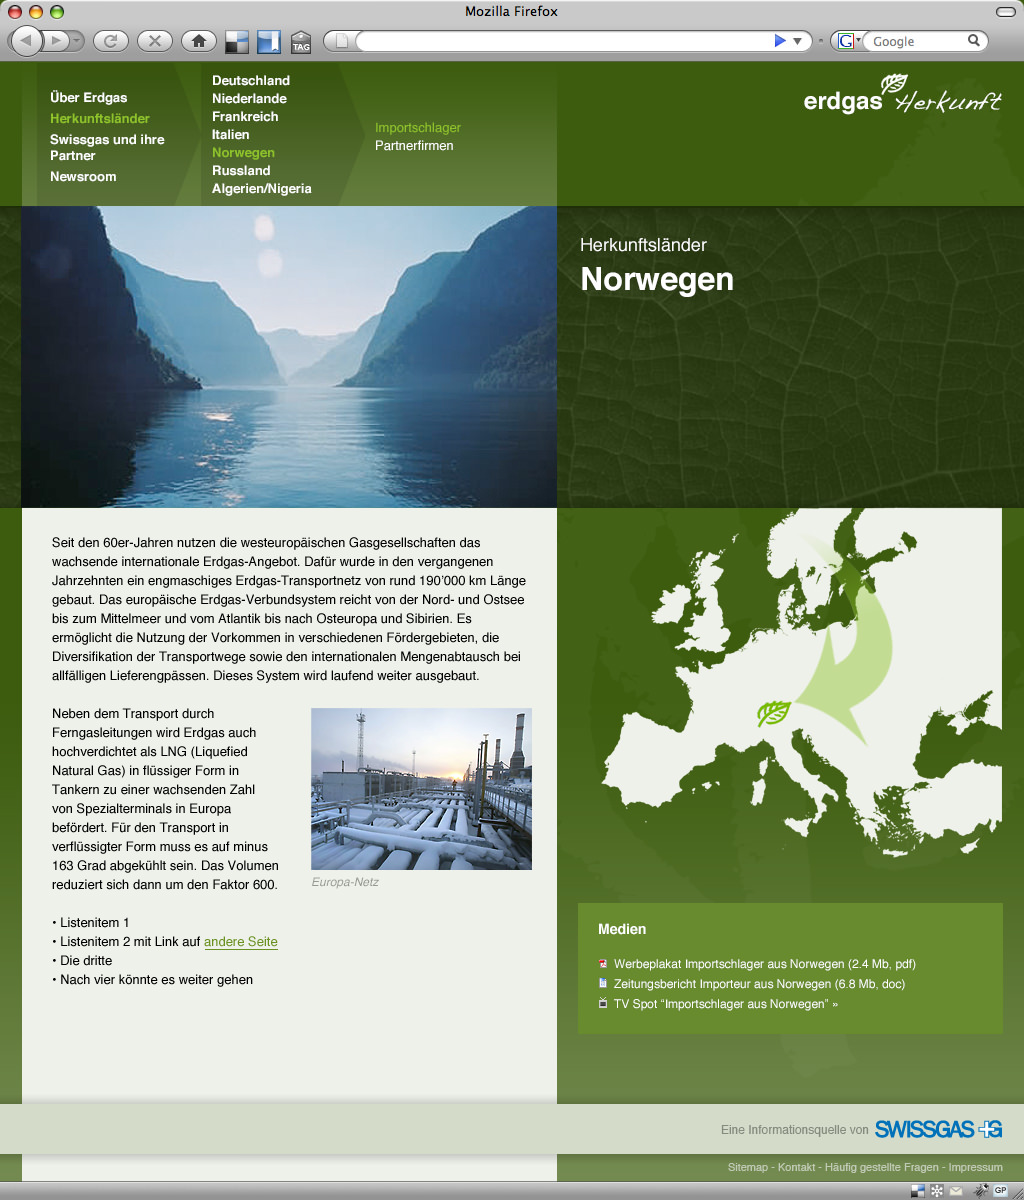 Web design for Erdgas